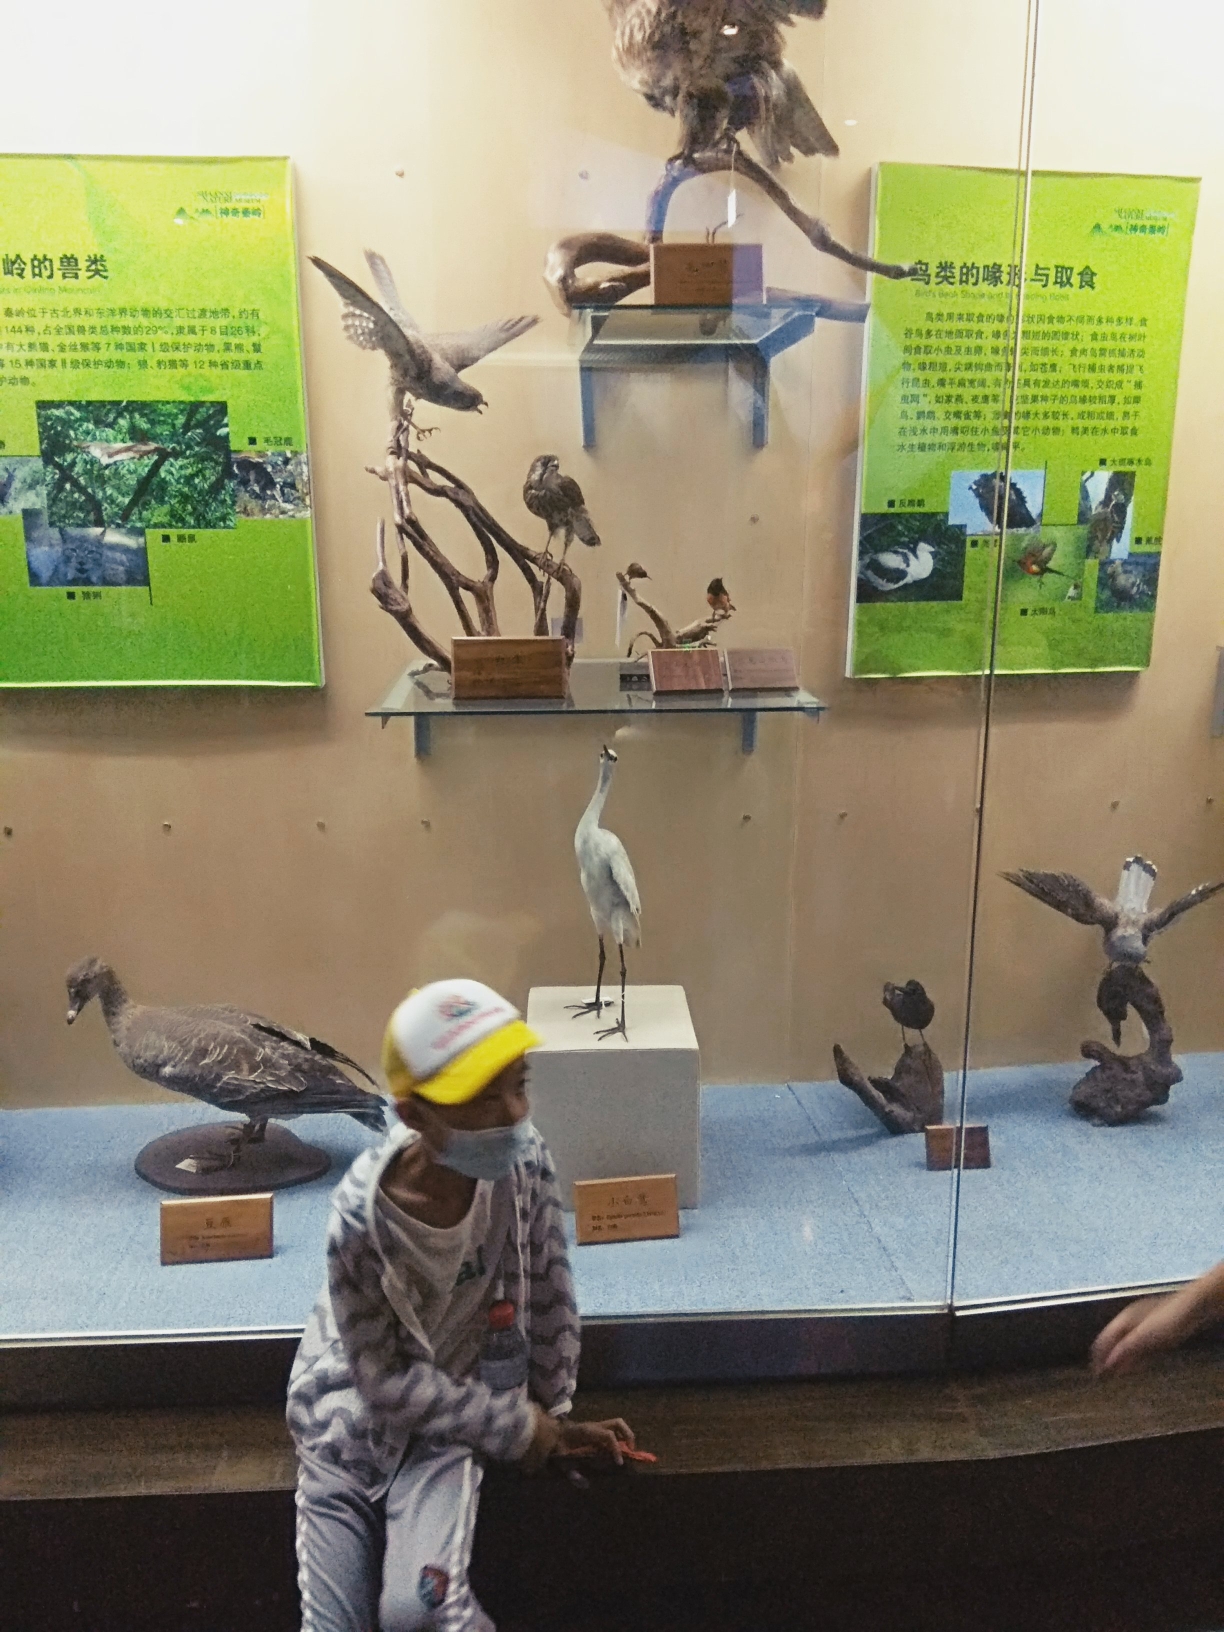 陕西省自然博物馆,西安自助游攻略 - 马蜂窝